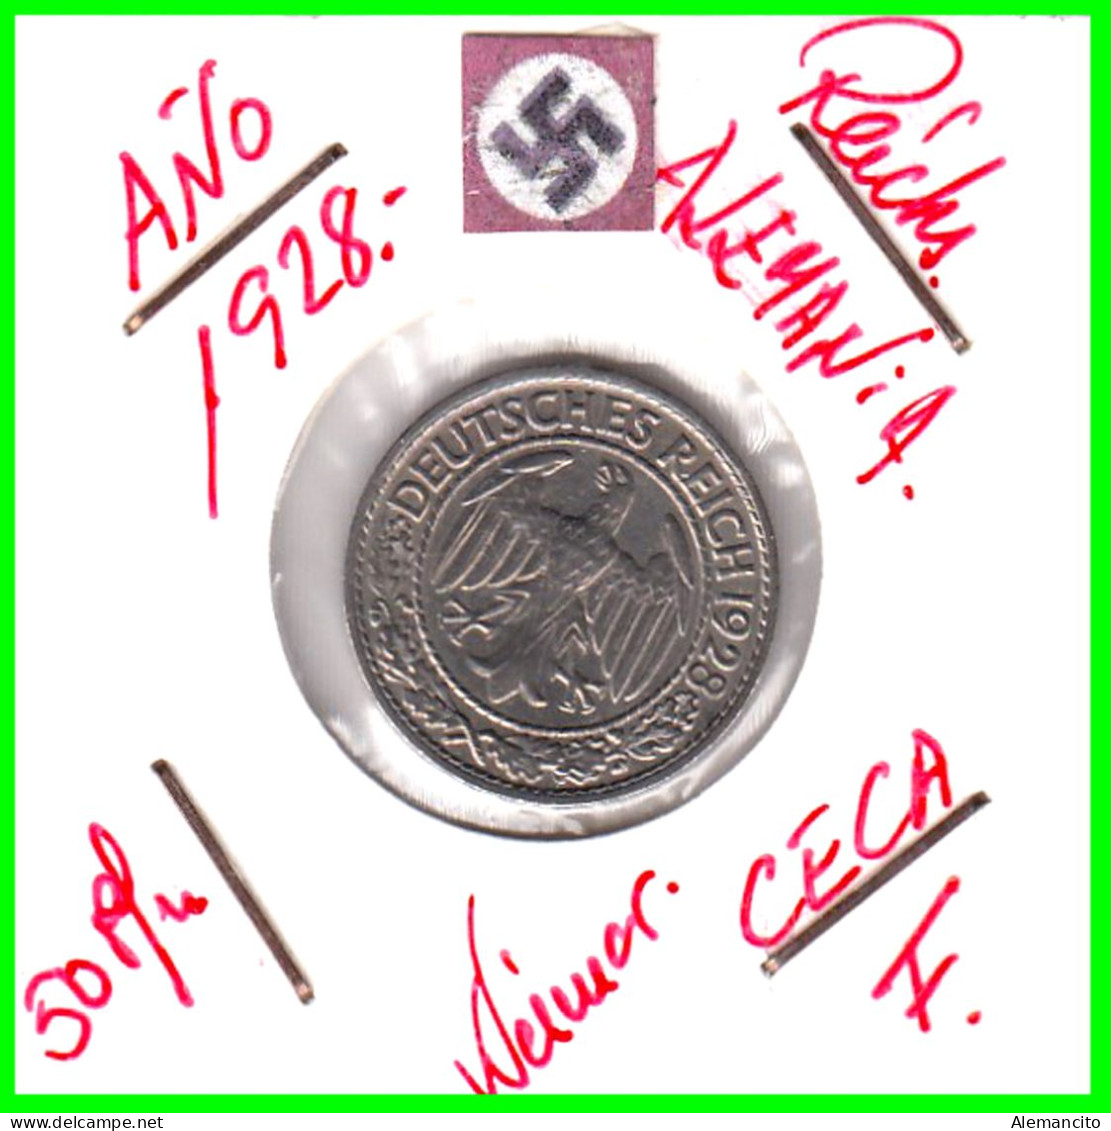 GERMANY REPÚBLICA DE WEIMAR 50 REICHSPFENNIG ( 1928 CECA - F )  (REICHSPFENNIG KM # 40 - 50 Renten- & 50 Reichspfennig